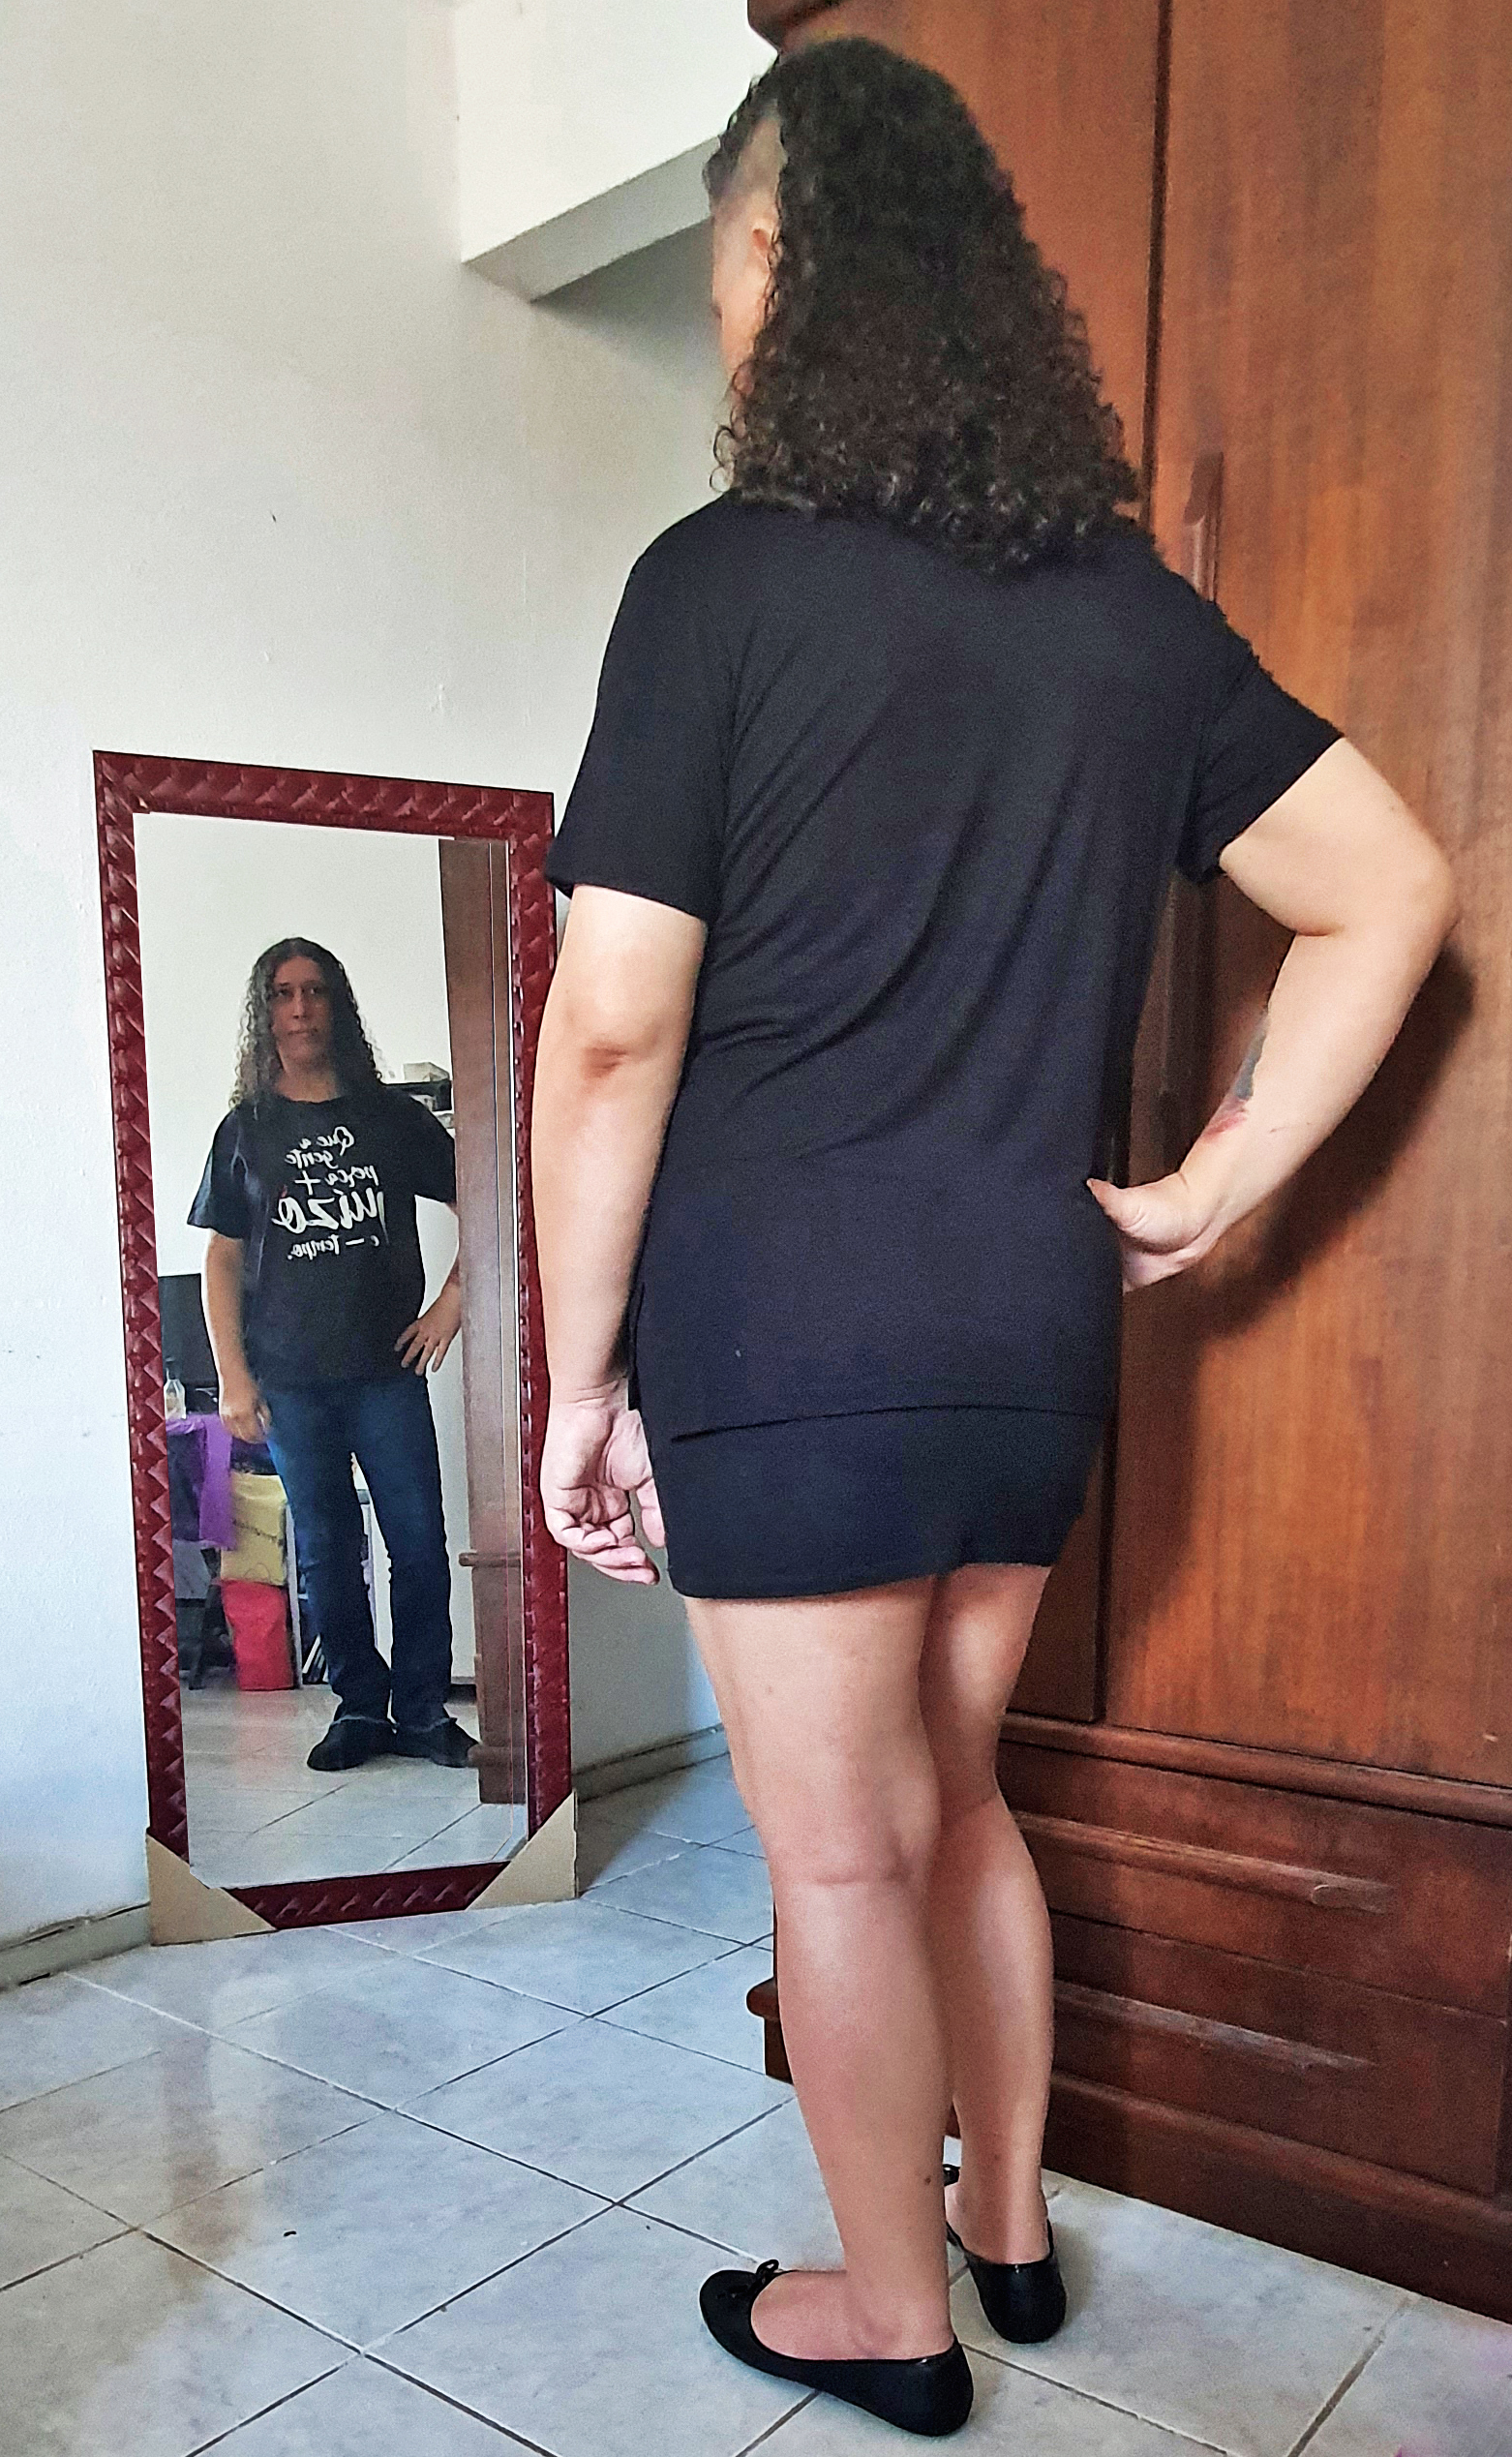 Pessoa se olhando no espelho, usando blusa preta, minissaia preta e sapatilhas. O reflexo está usando camisa preta, calça jeans azul e tênis.